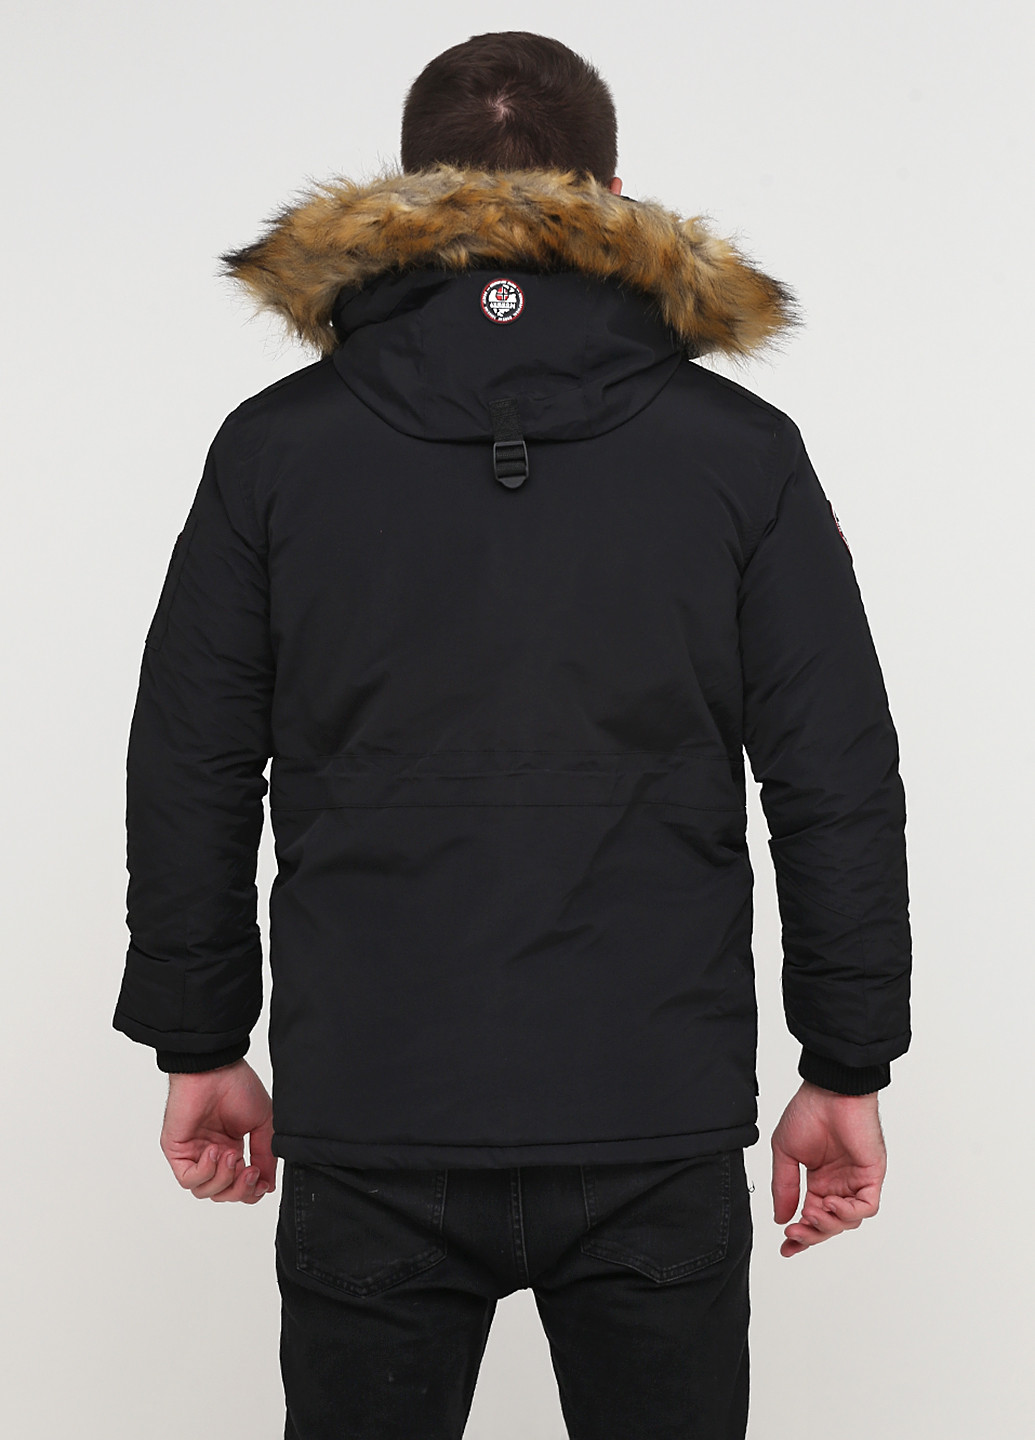 Черная зимняя куртка Geographical Norway